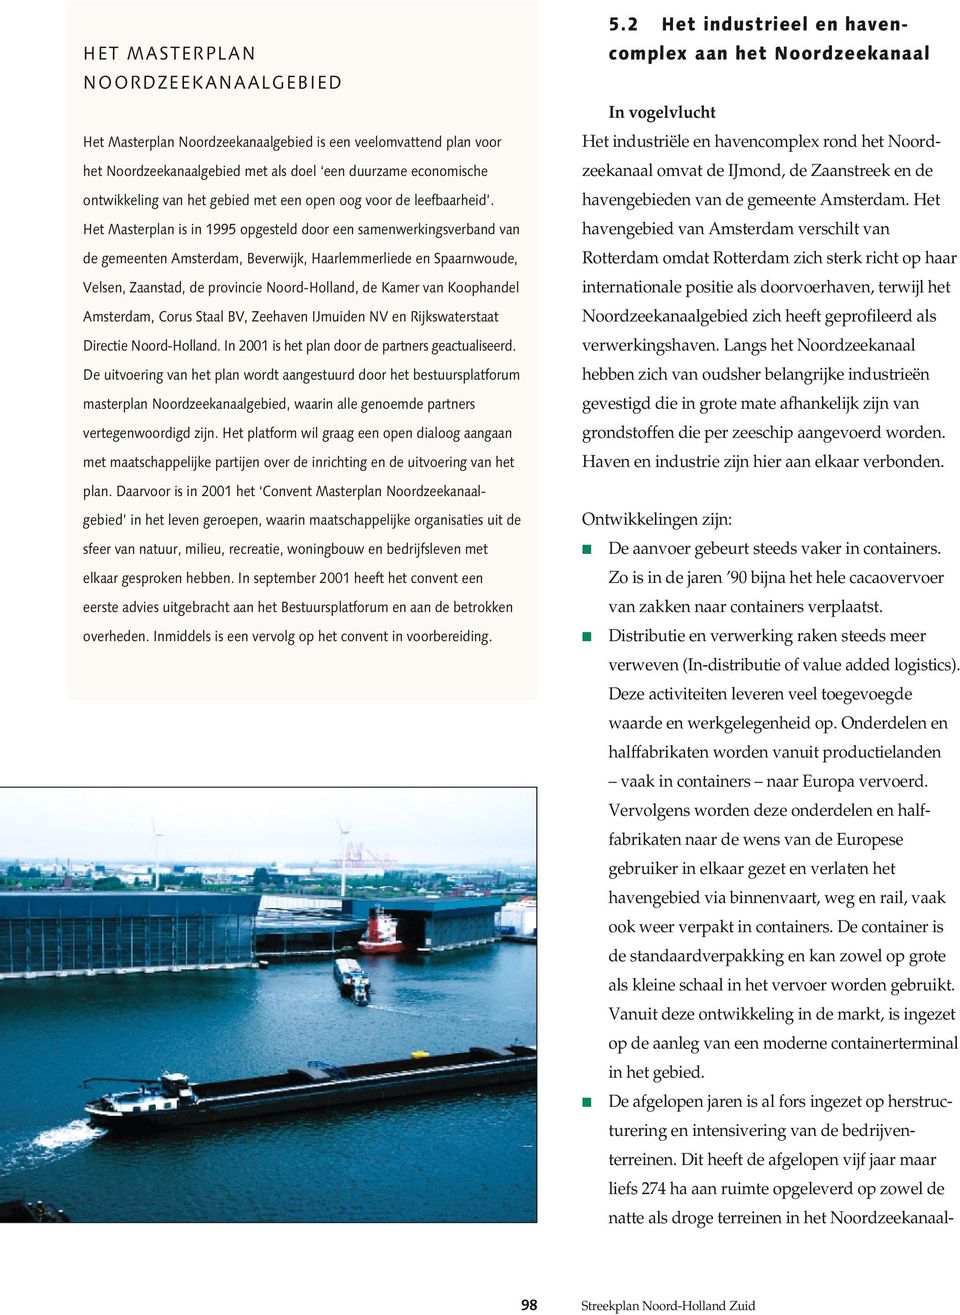 Het Masterplan is in 1995 opgesteld door een samenwerkingsverband van de gemeenten Amsterdam, Beverwijk, Haarlemmerliede en Spaarnwoude, Velsen, Zaanstad, de provincie Noord-Holland, de Kamer van